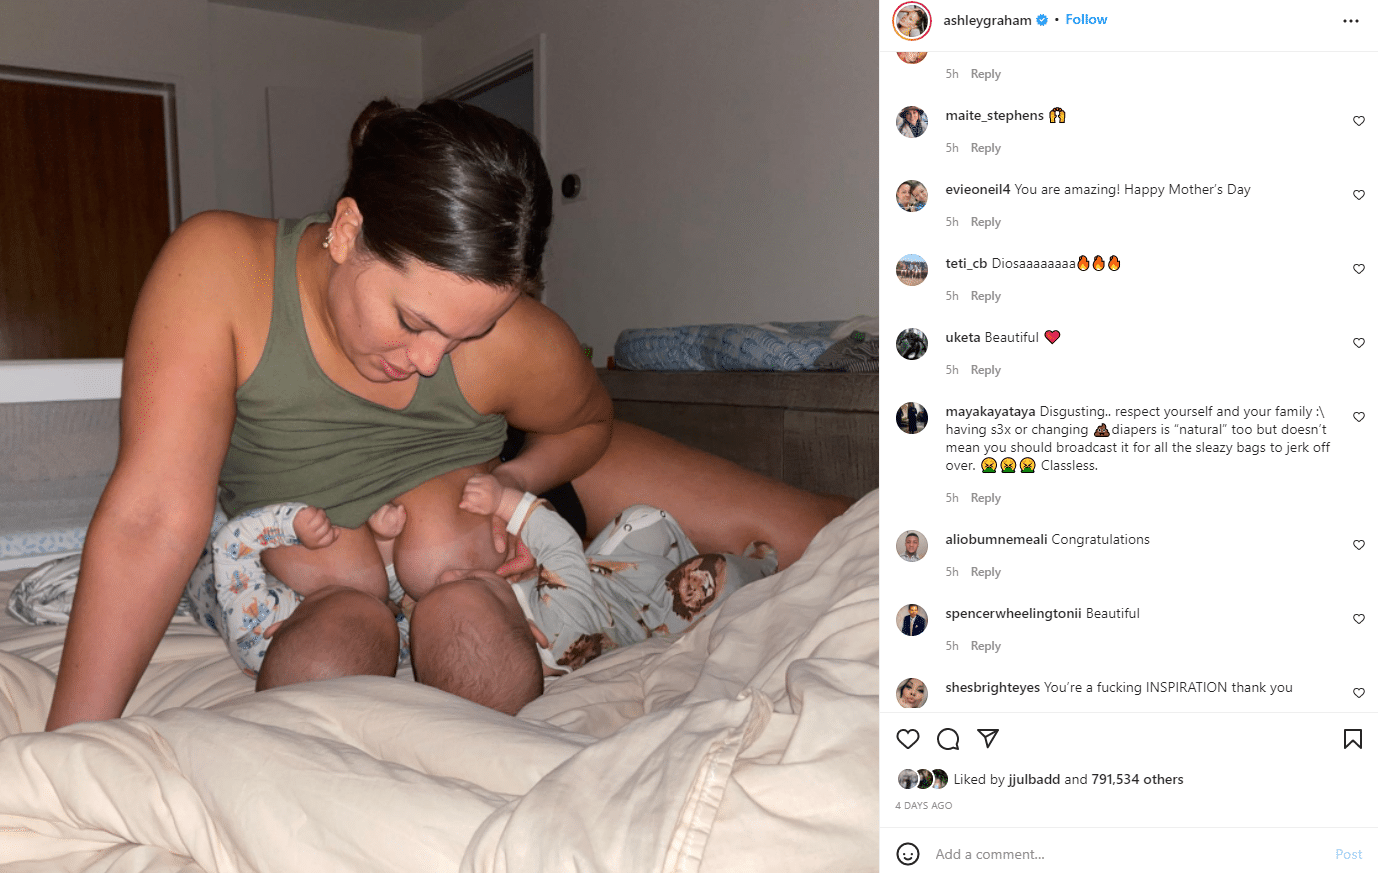 Ashley Gram gets trolled on Instagram over Tandem Feeding Photos